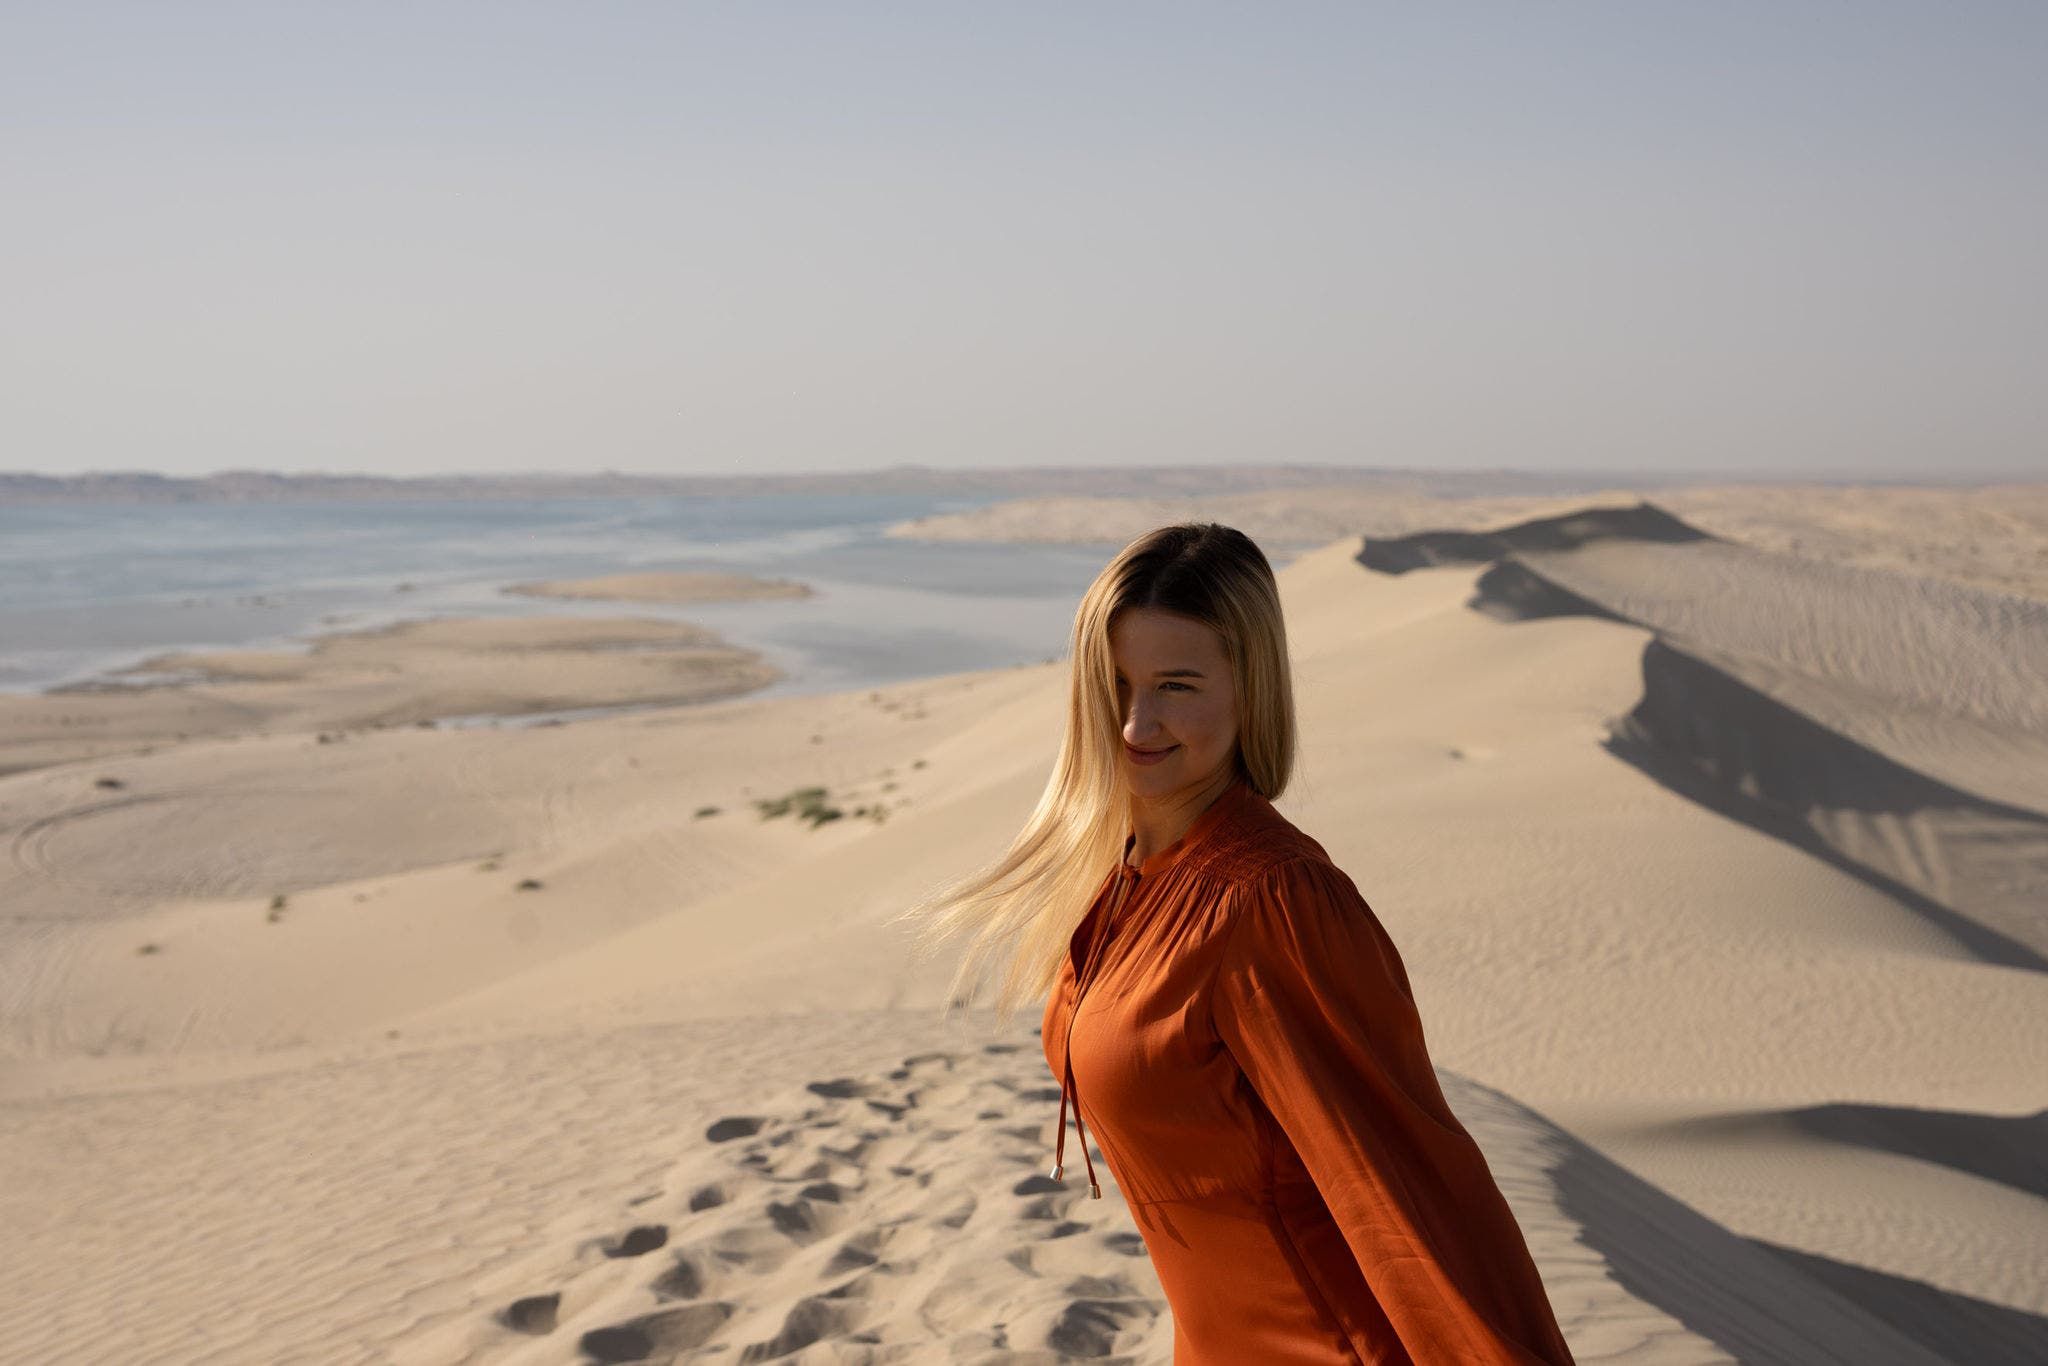 Katar’da Çöl Safarisi Maceraları